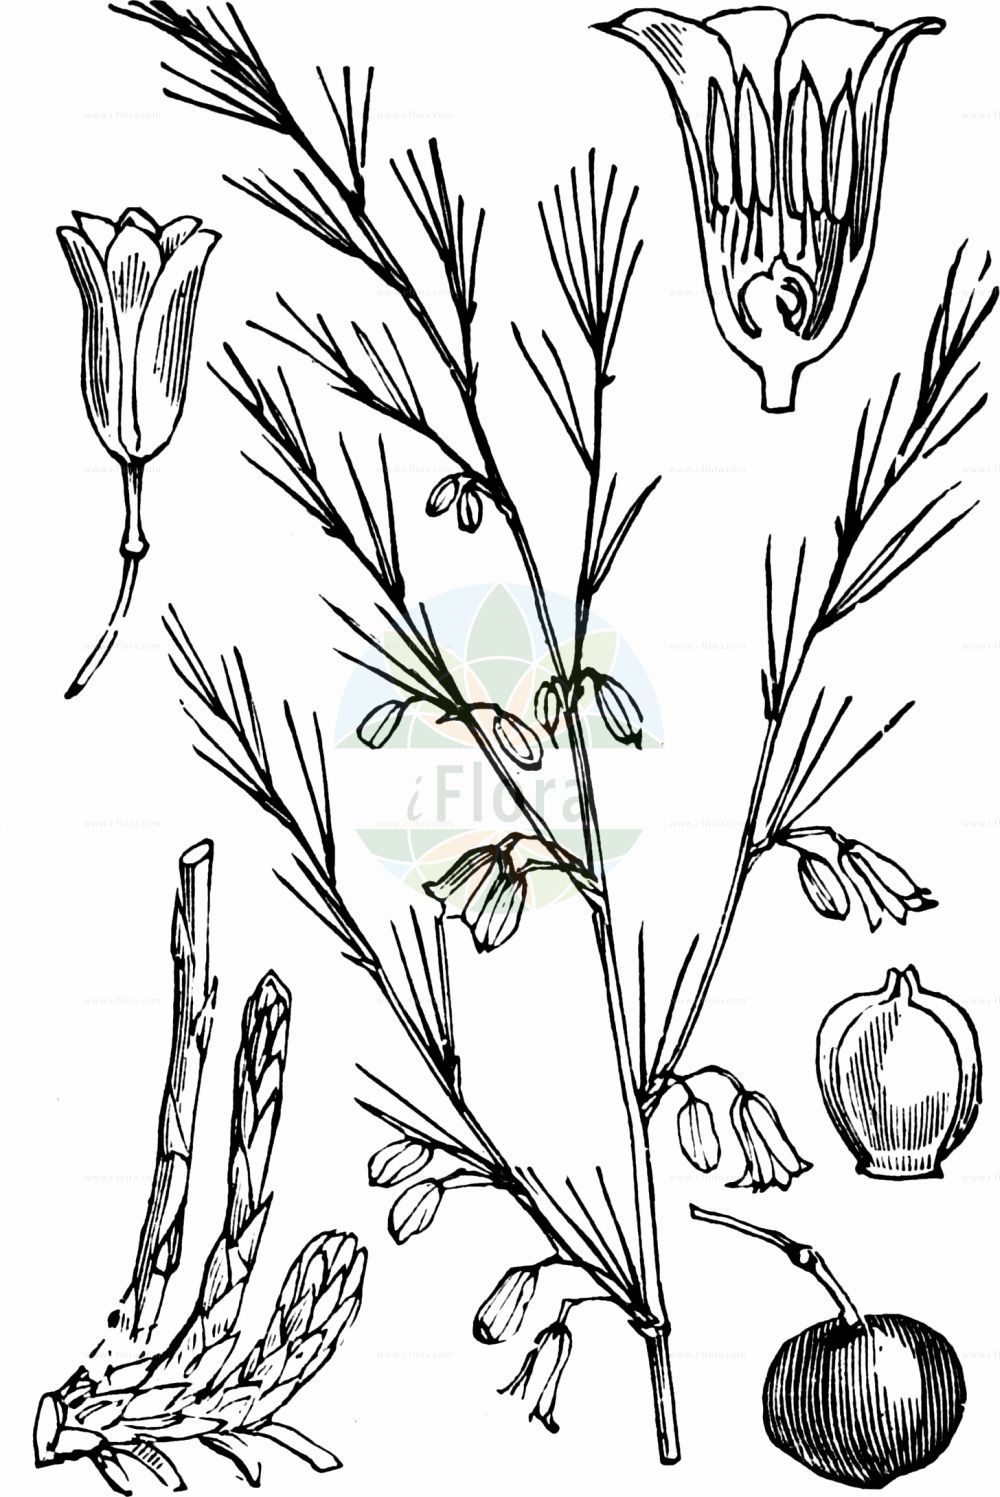 Historische Abbildung von Asparagus officinalis (Gemüse-Spargel - Garden Asparagus). Das Bild zeigt Blatt, Bluete, Frucht und Same. ---- Historical Drawing of Asparagus officinalis (Gemüse-Spargel - Garden Asparagus). The image is showing leaf, flower, fruit and seed.(Asparagus officinalis,Gemüse-Spargel,Garden Asparagus,Asparagus officinalis,Gemuese-Spargel,Garden Asparagus,Wild Asparagus,Asparagus,Spargel,Asparagus,Asparagaceae,Spargelgewächse,Asparagus family,Blatt,Bluete,Frucht,Same,leaf,flower,fruit,seed,Fitch et al. (1880))